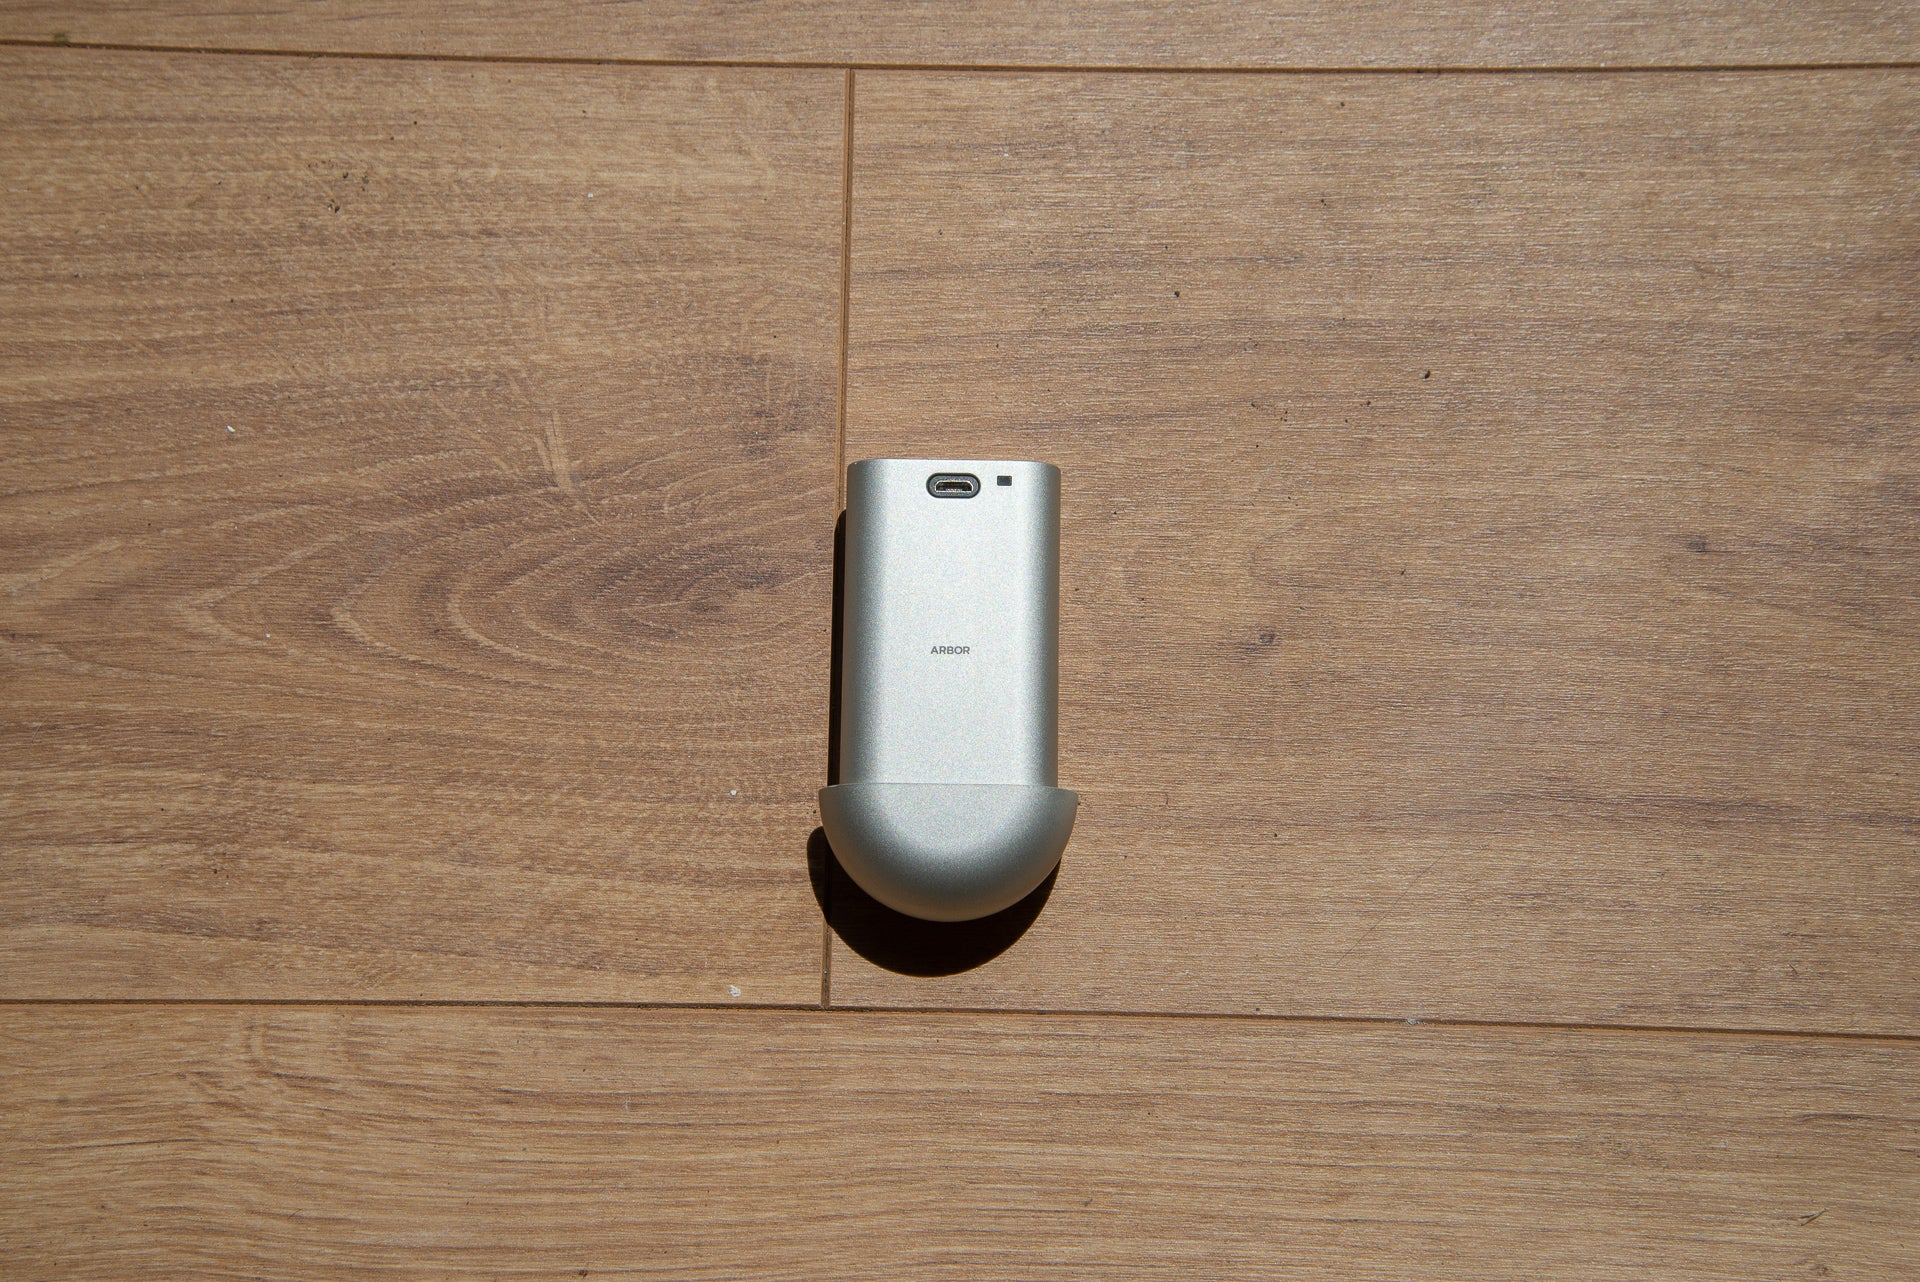 Arbor Video Doorbell battery